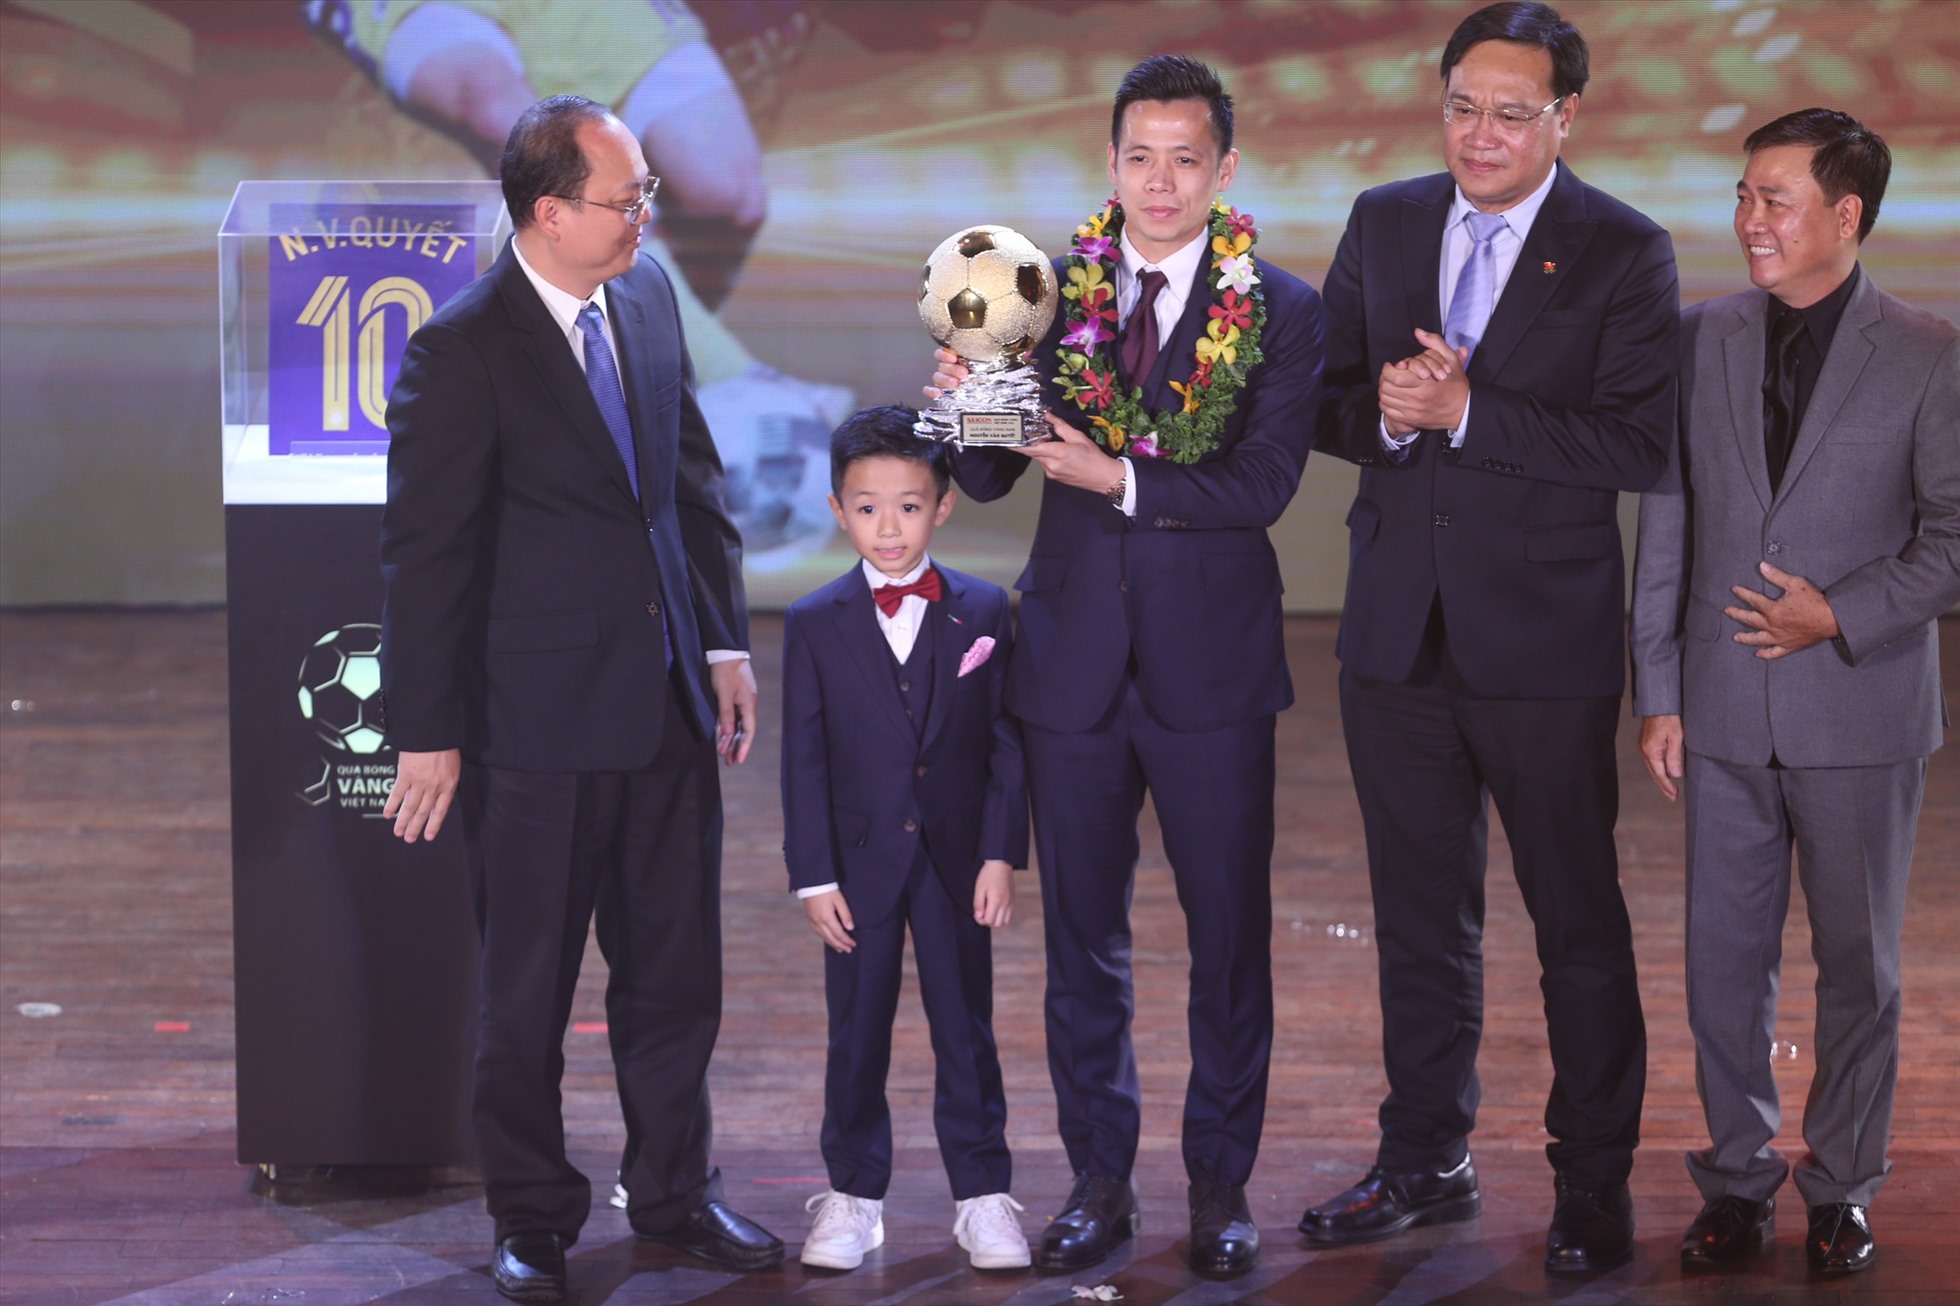 Danh hiệu Quả bóng vàng là phần thưởng xứng đáng cho những đóng góp của Văn Quyết trong năm 2022. Ảnh: Thanh Vũ